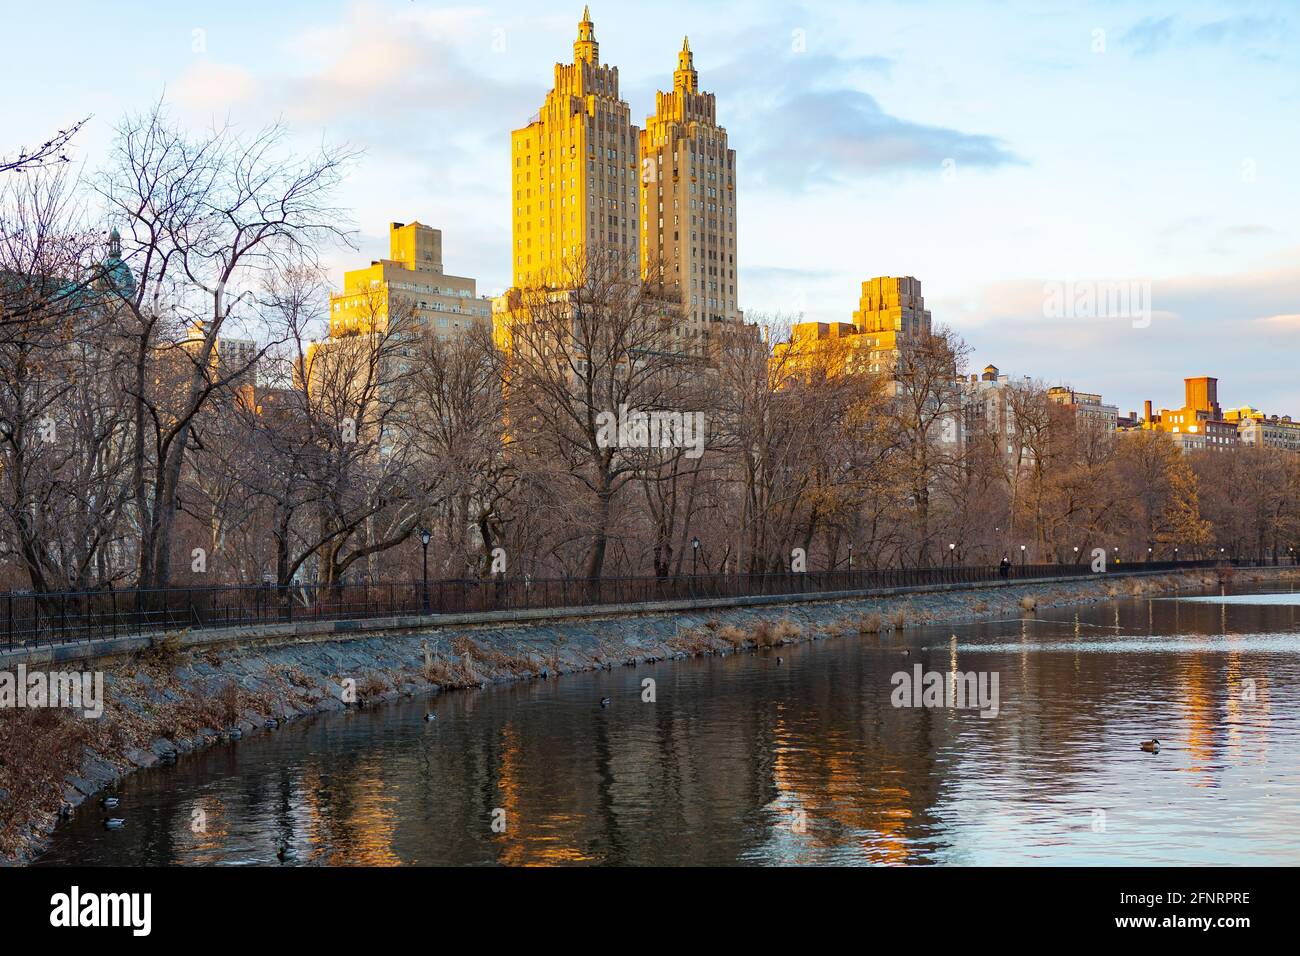 Le réservoir Jacqueline Kennedy Onassis et les bâtiments le long de Central Park West, en hiver, Manhattan, New York. Banque D'Images